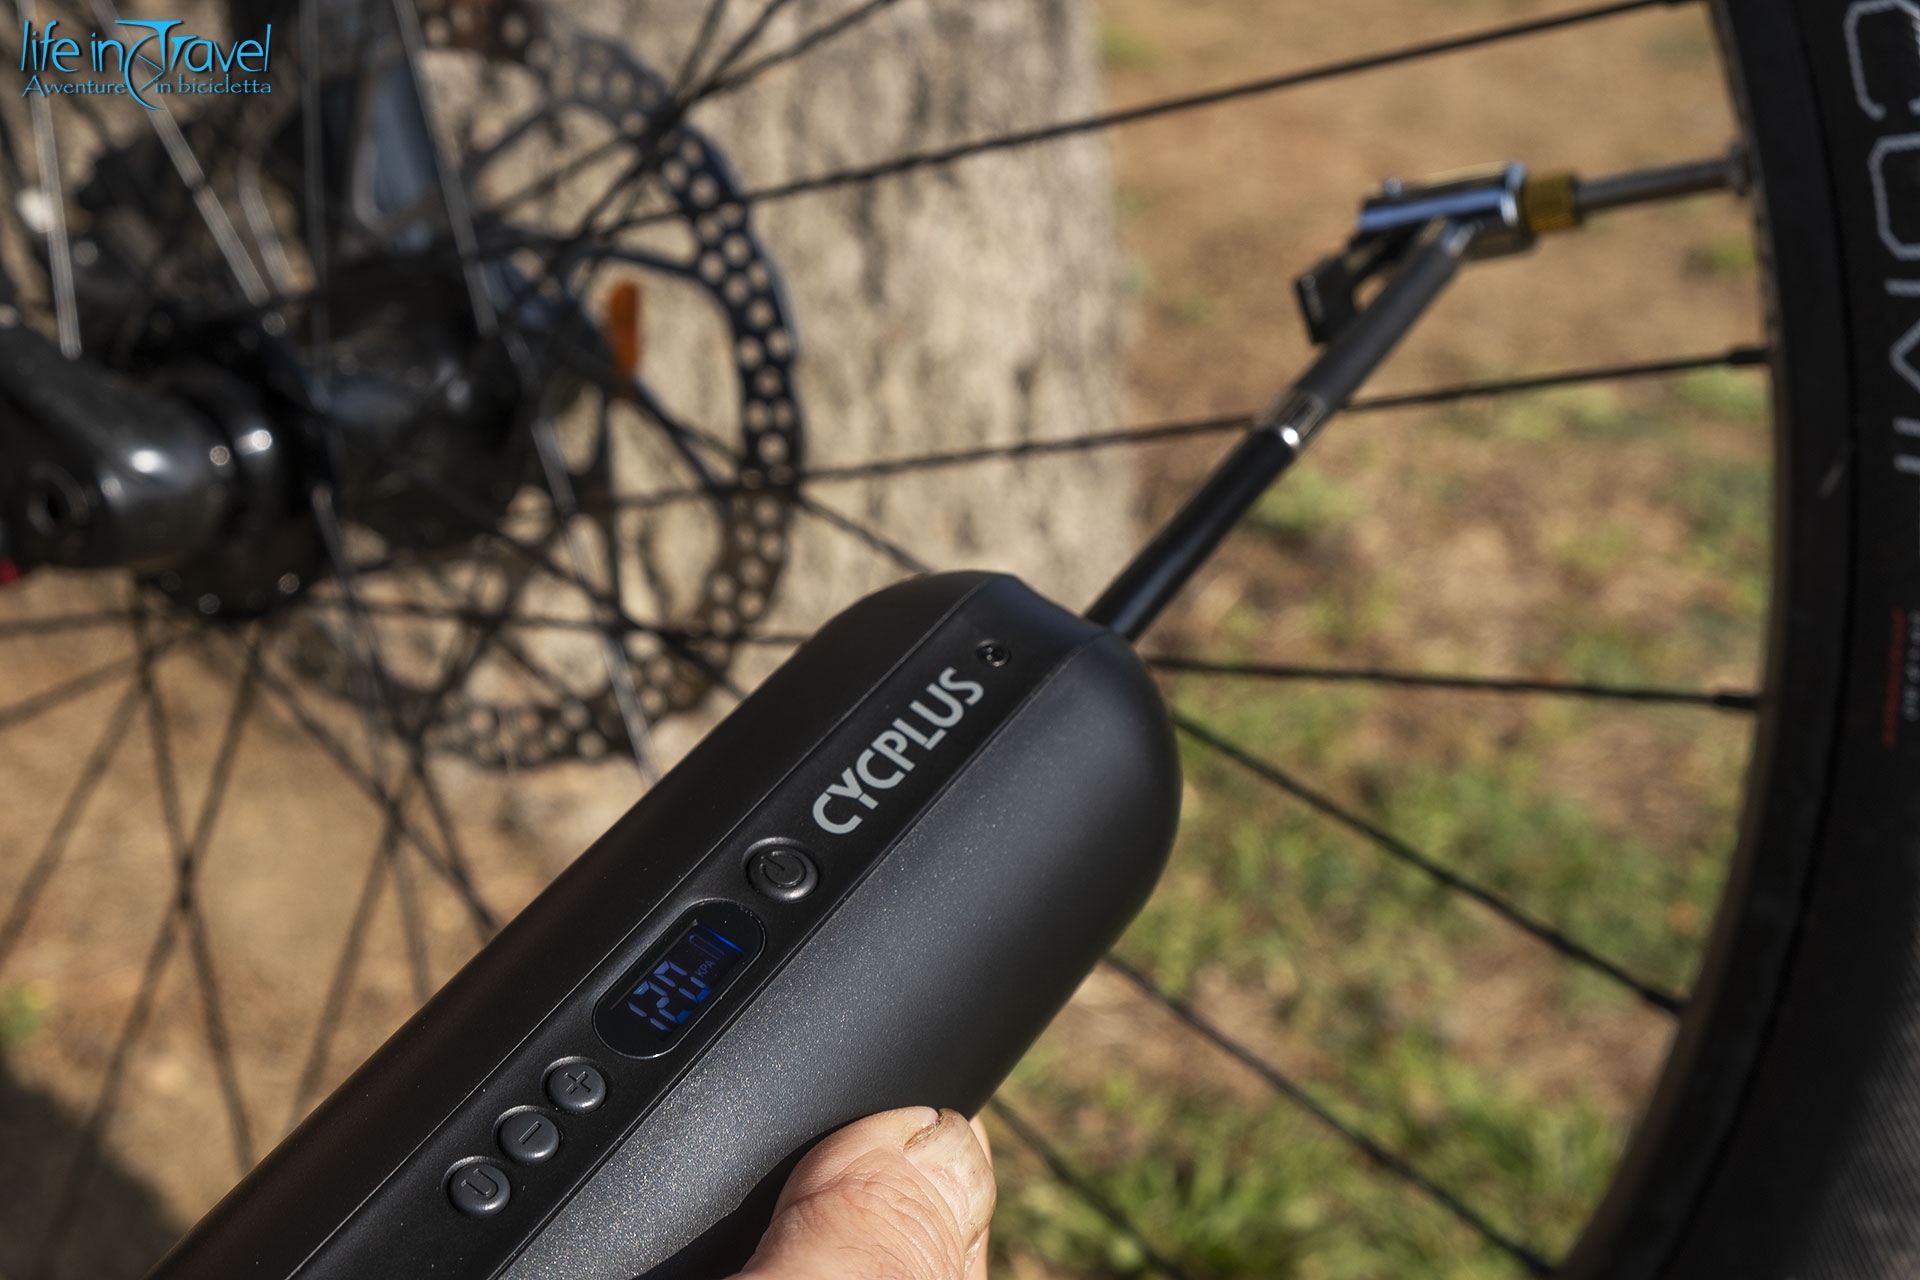 Pompa elettrica per bici portatile: recensione della Cycplus A3 - Life in  Travel